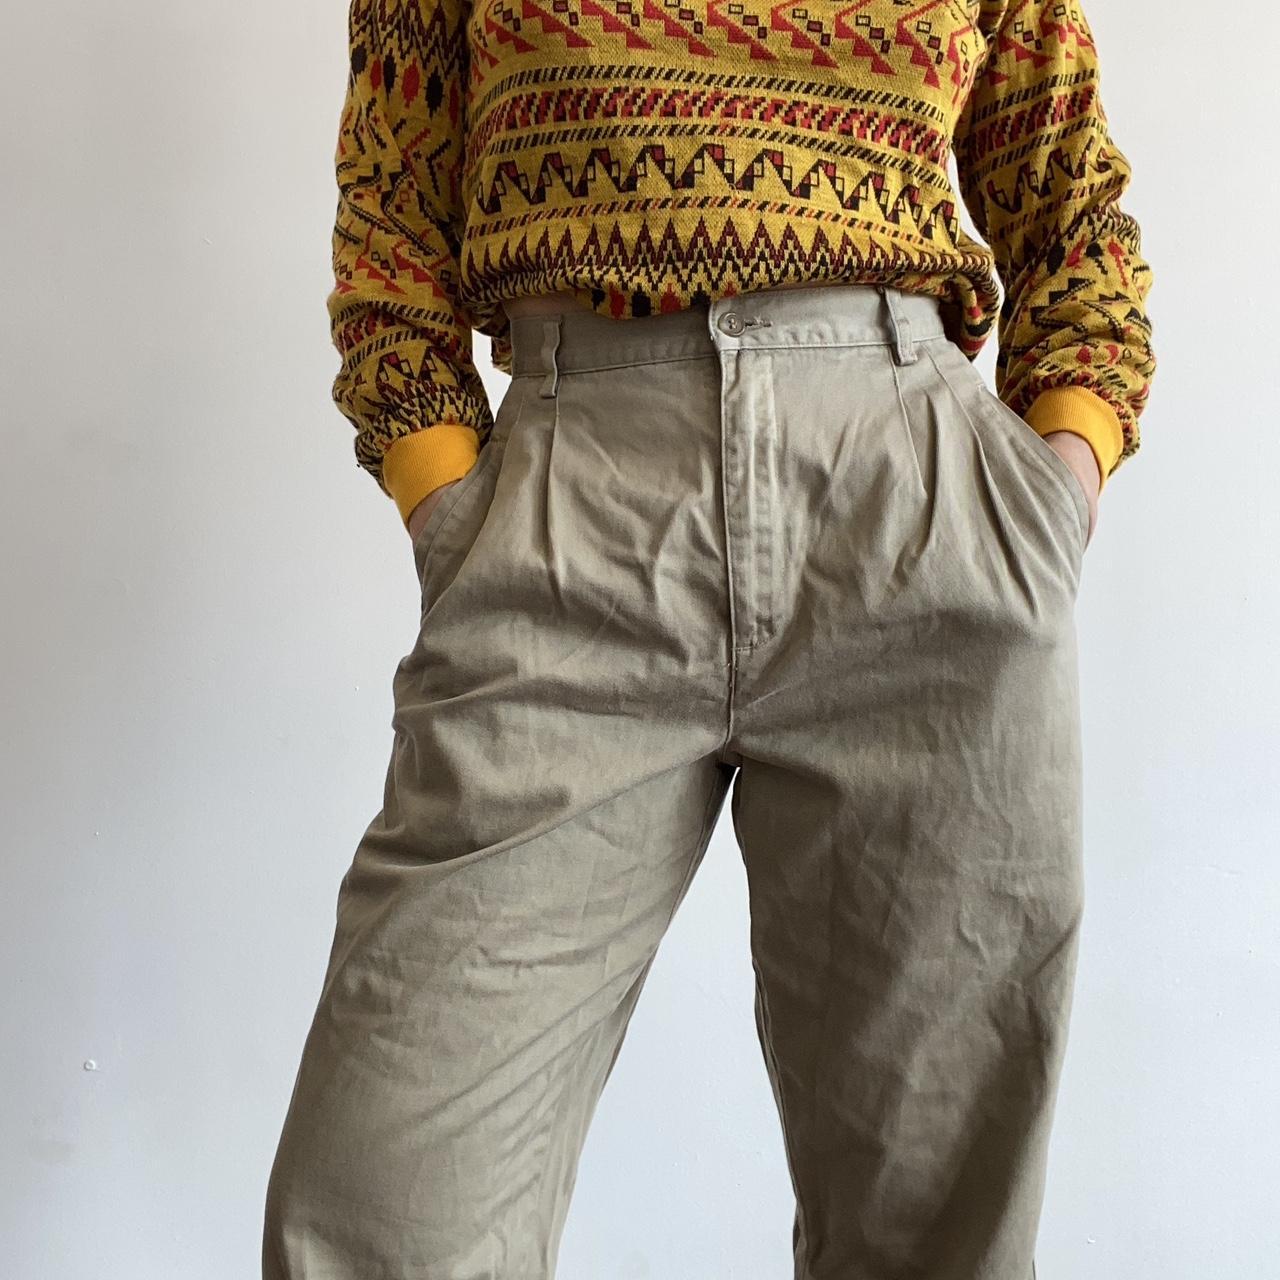 Shop Men's Gap Cotton Trousers up to 45% Off | DealDoodle